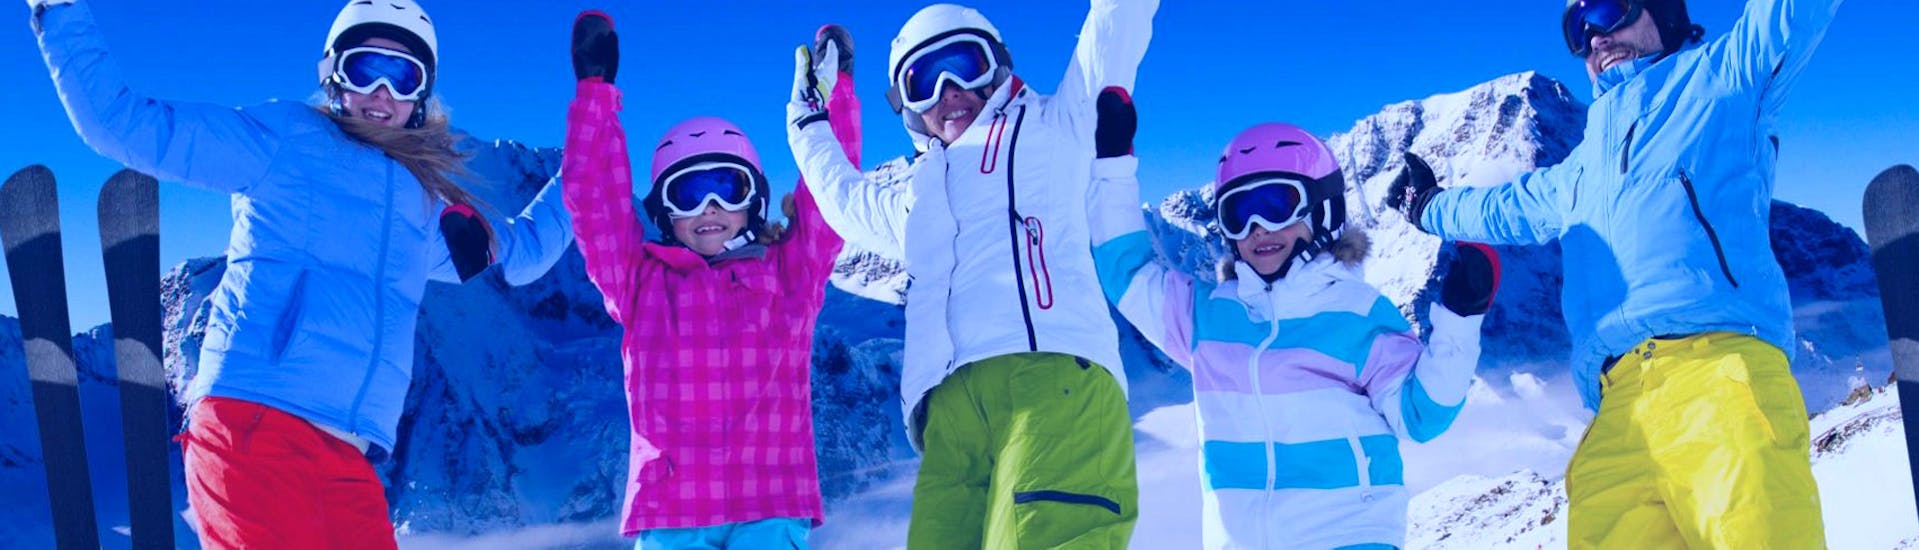 Des gens qui s'amusent pendant les Cours de ski pour Enfants (6-14 ans) de Tous Niveaux avec Scuola Italiana Sci Dolomiti San Martino di Castrozza.